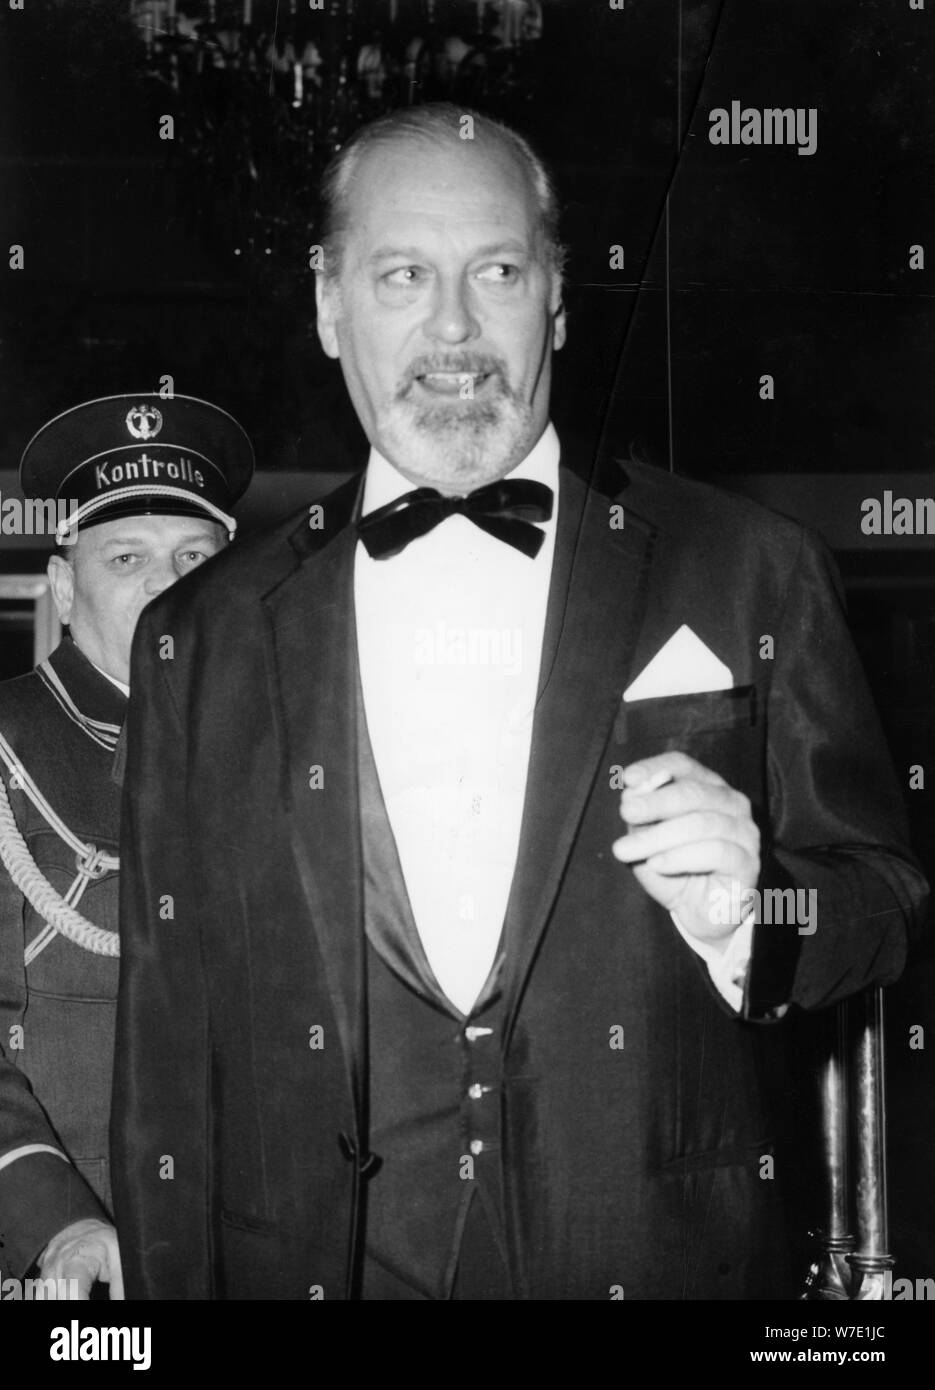 Curd Jürgens arriving at a ball, Hotel Bayerischer Hof, Munich, Germany, c1960s(?). Artist: Unknown Stock Photo